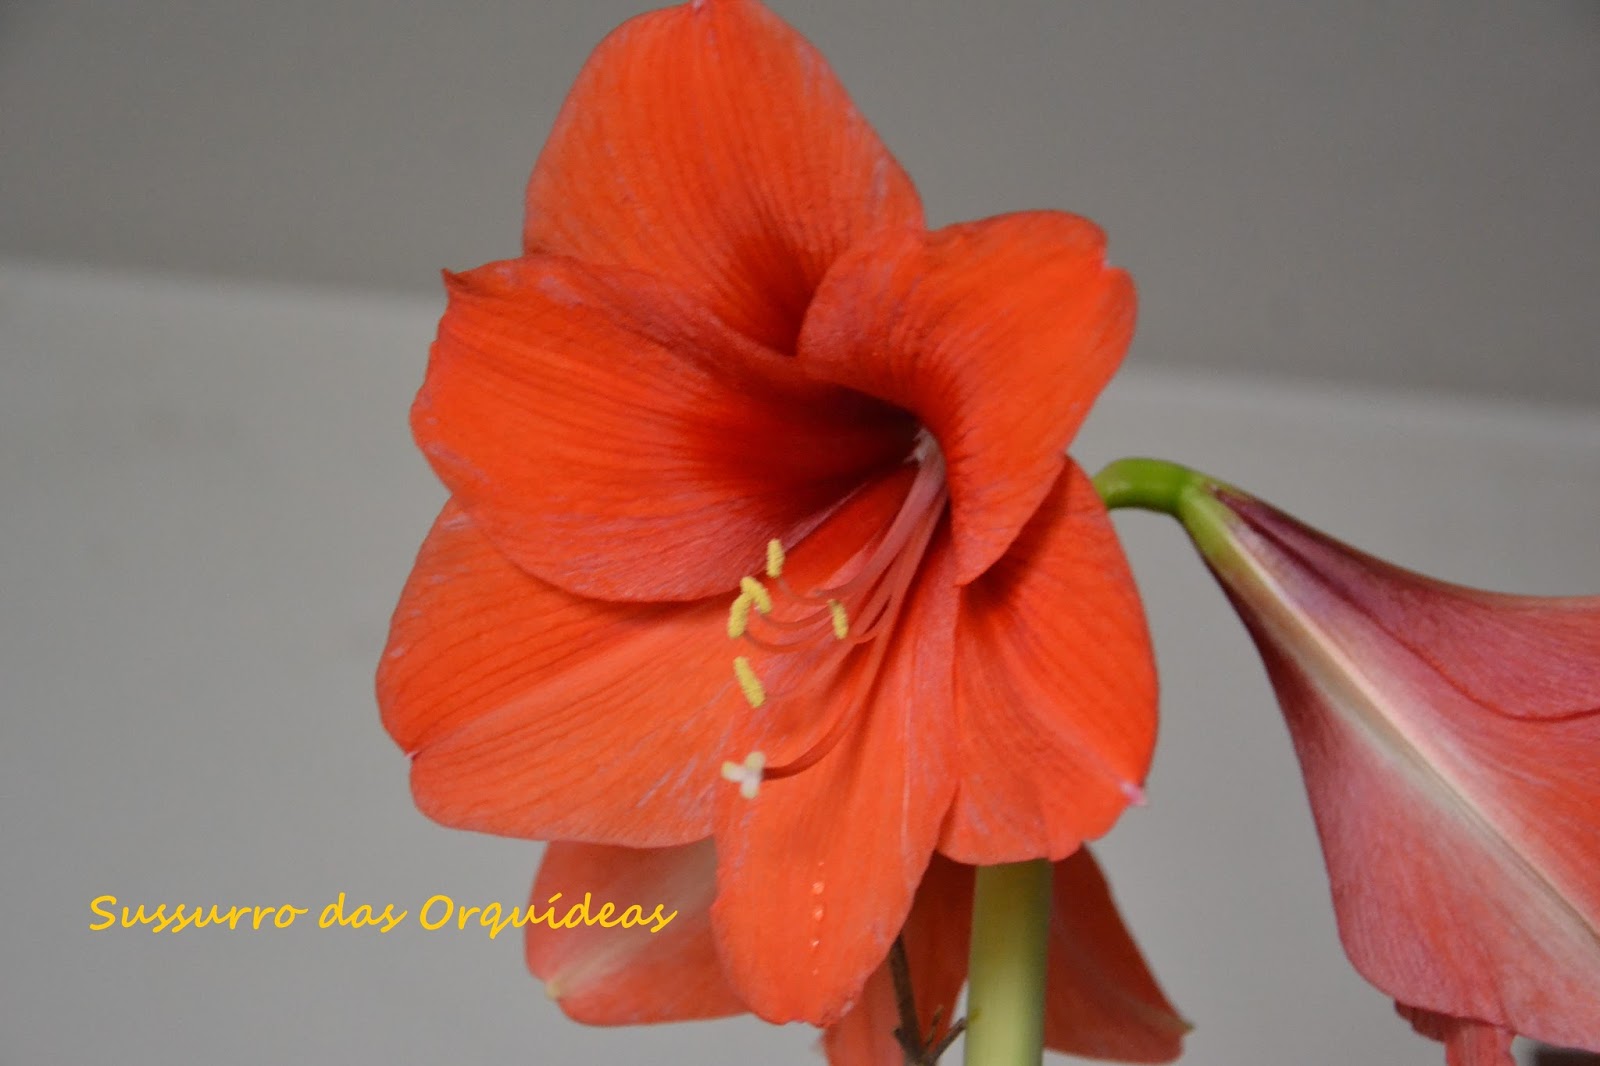 Sussurro das Orquídeas: Polinização de e entre Amaryllis